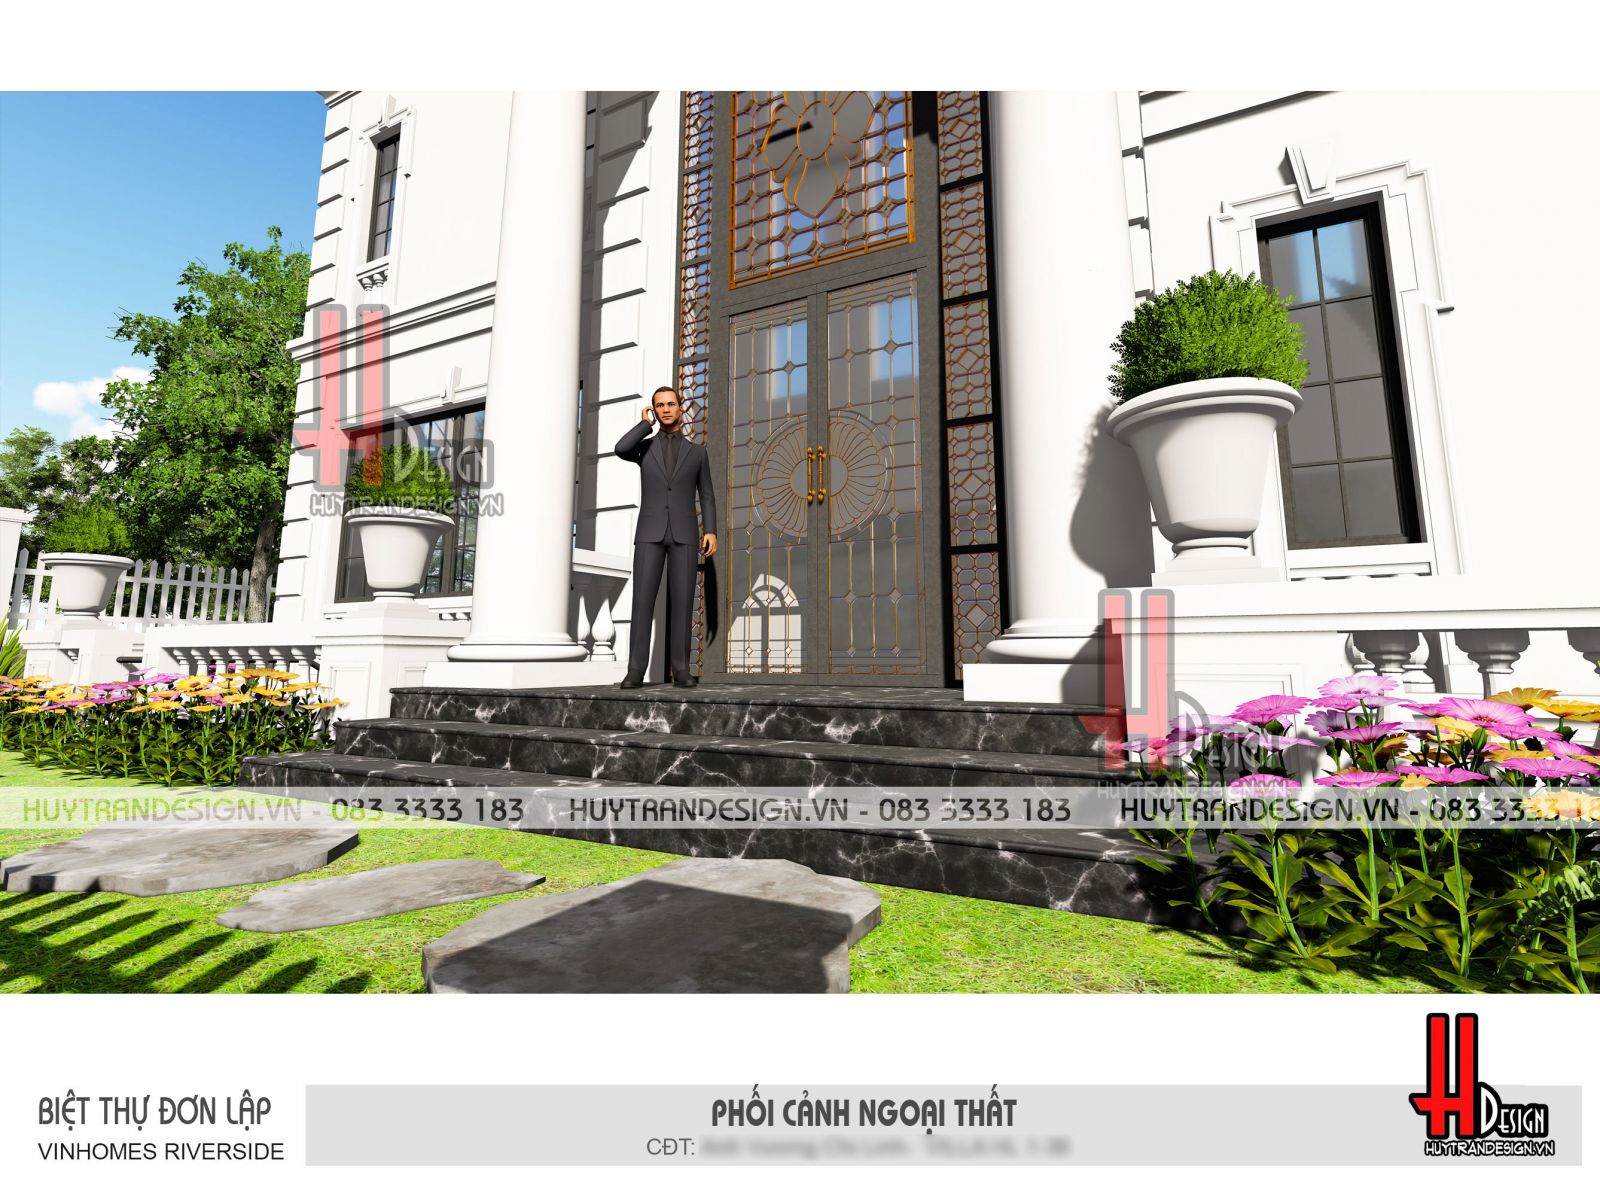 Mẫu thiết kế nhà 3 tầng đẹp - Huytrandesign tư vấn, thiết kế, thi công, sửa chữa nhà đẹp tại Long Biên, Hà Nội - v5